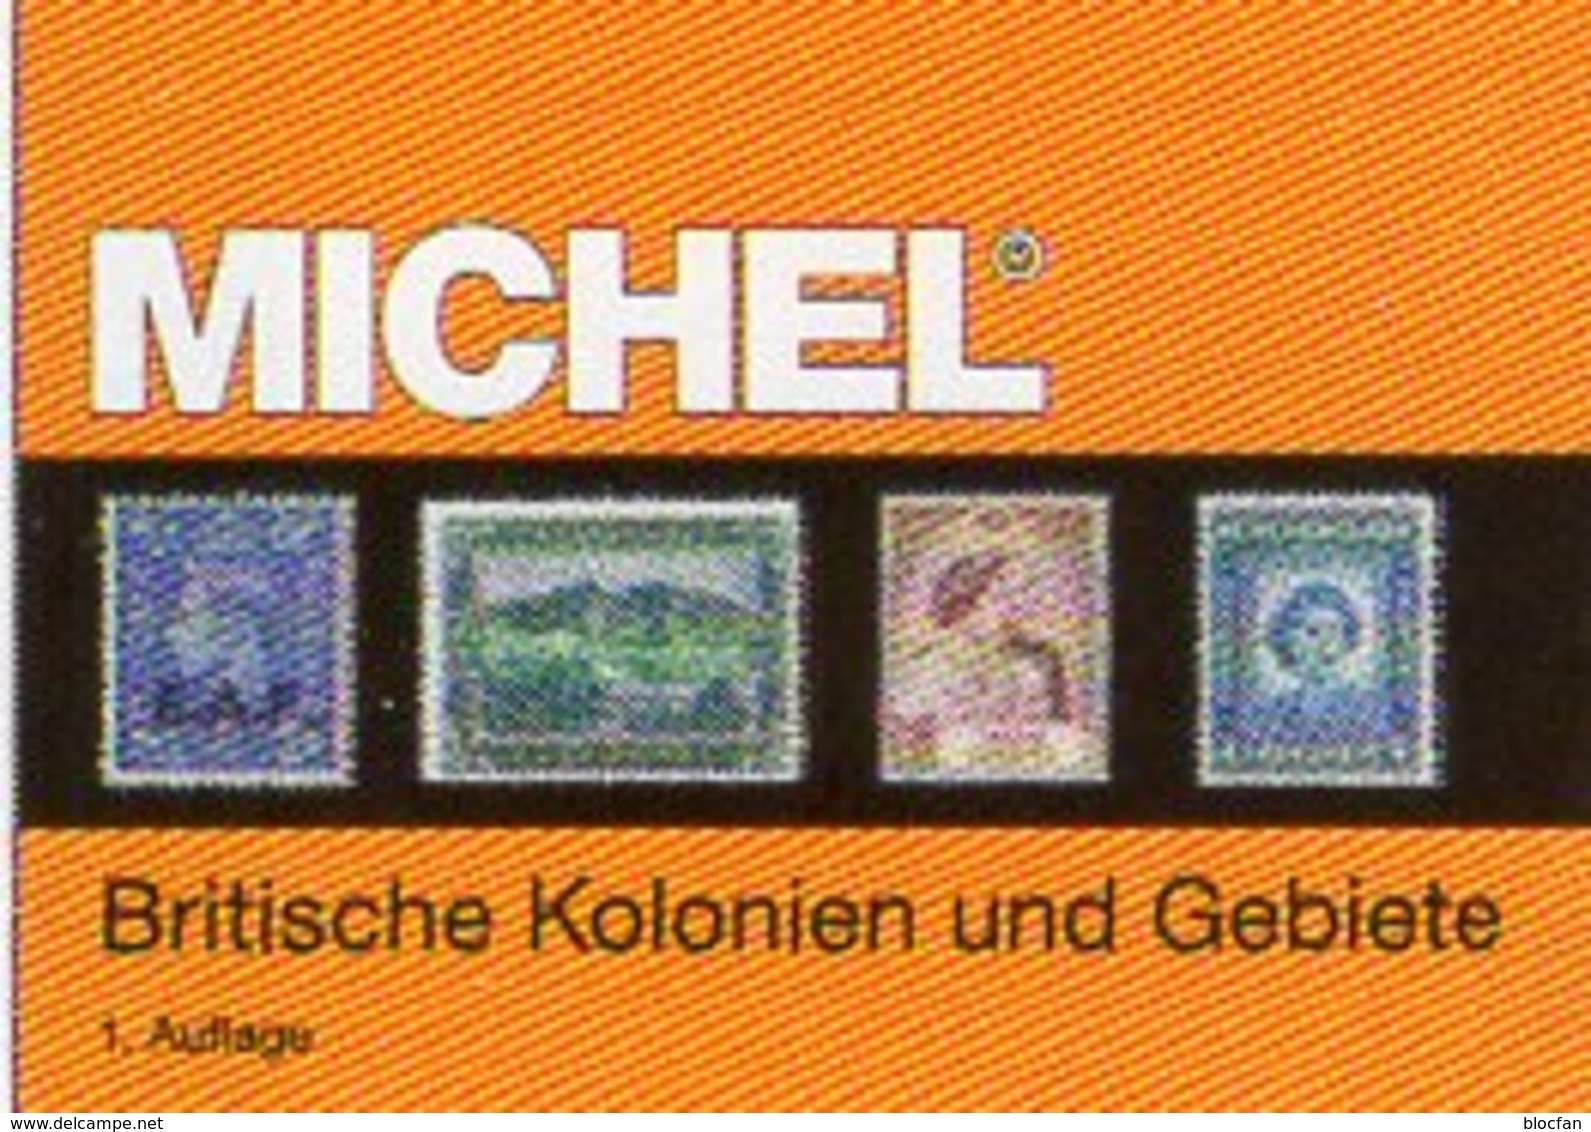 Großbritannien 1 Kolonien A-H MlCHEL 2018 New 89€ Britische Gebiete Stamp Catalogue Of Old UK ISBN978-3-95402-281-6 - Enciclopedias